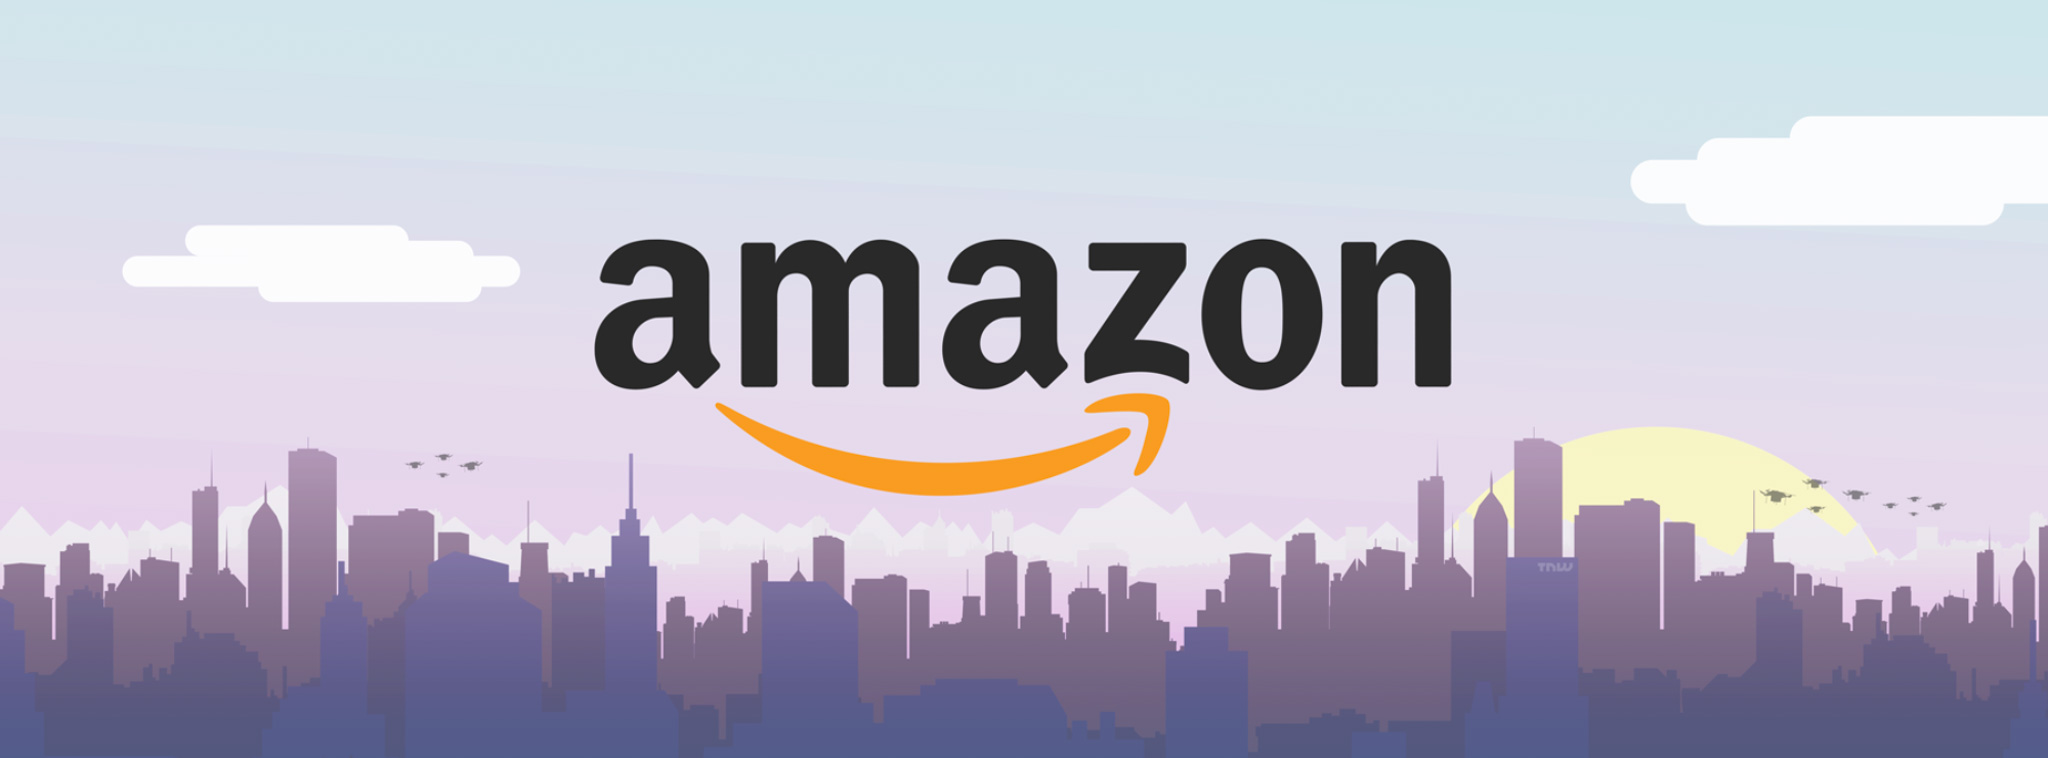 Amazon đăng ký thương hiệu AmazonTube, sẽ cạnh tranh trực tiếp với YouTube